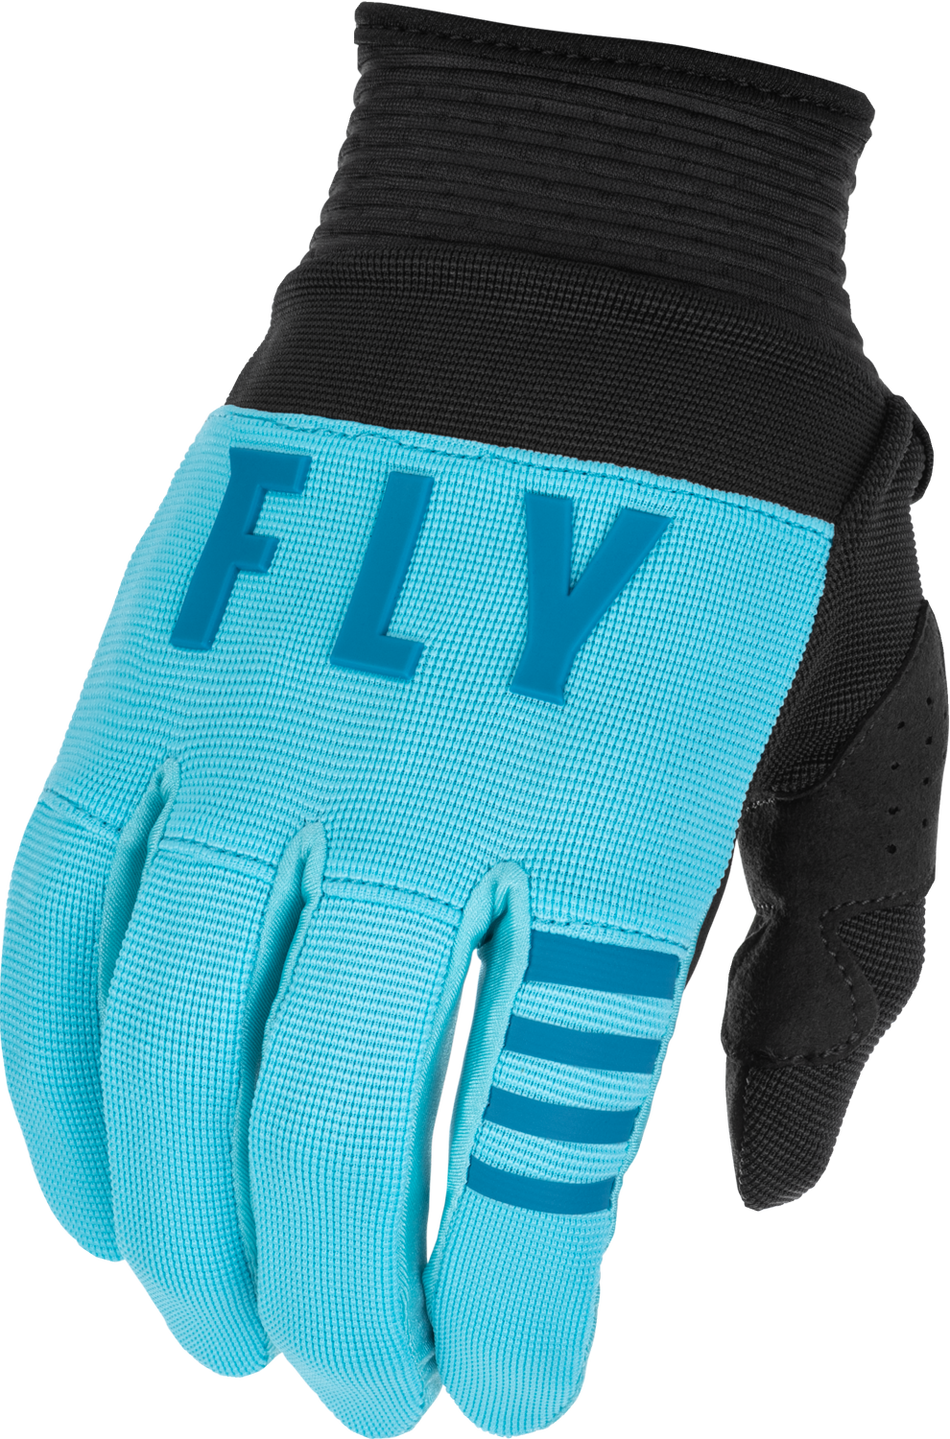 FLY RACING Youth F-16 Gloves Aqua/Dark Teal/Black Ym 375-810YM